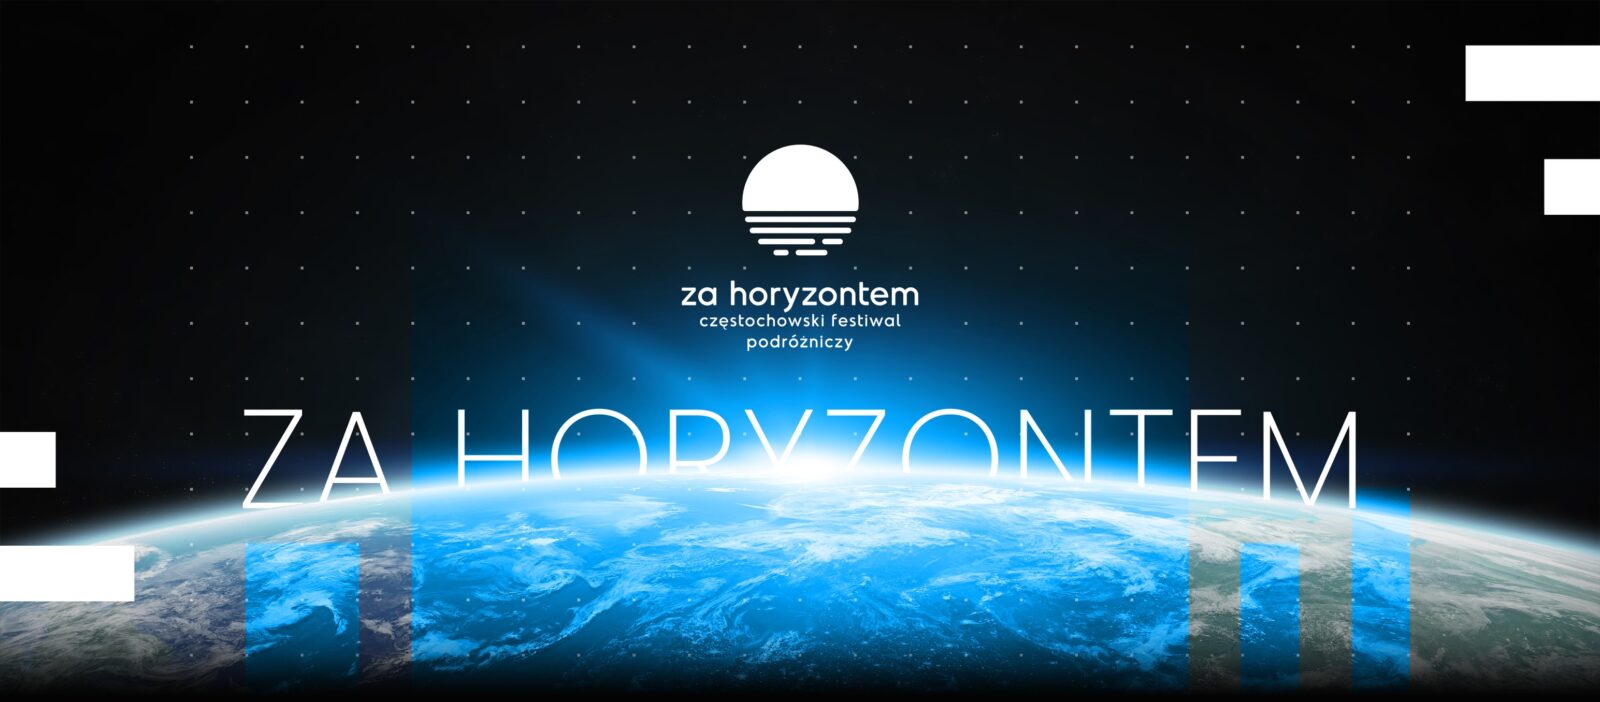 5 maja startuje Częstochowski Festiwal Podróżniczy "Za Horyzontem" 3